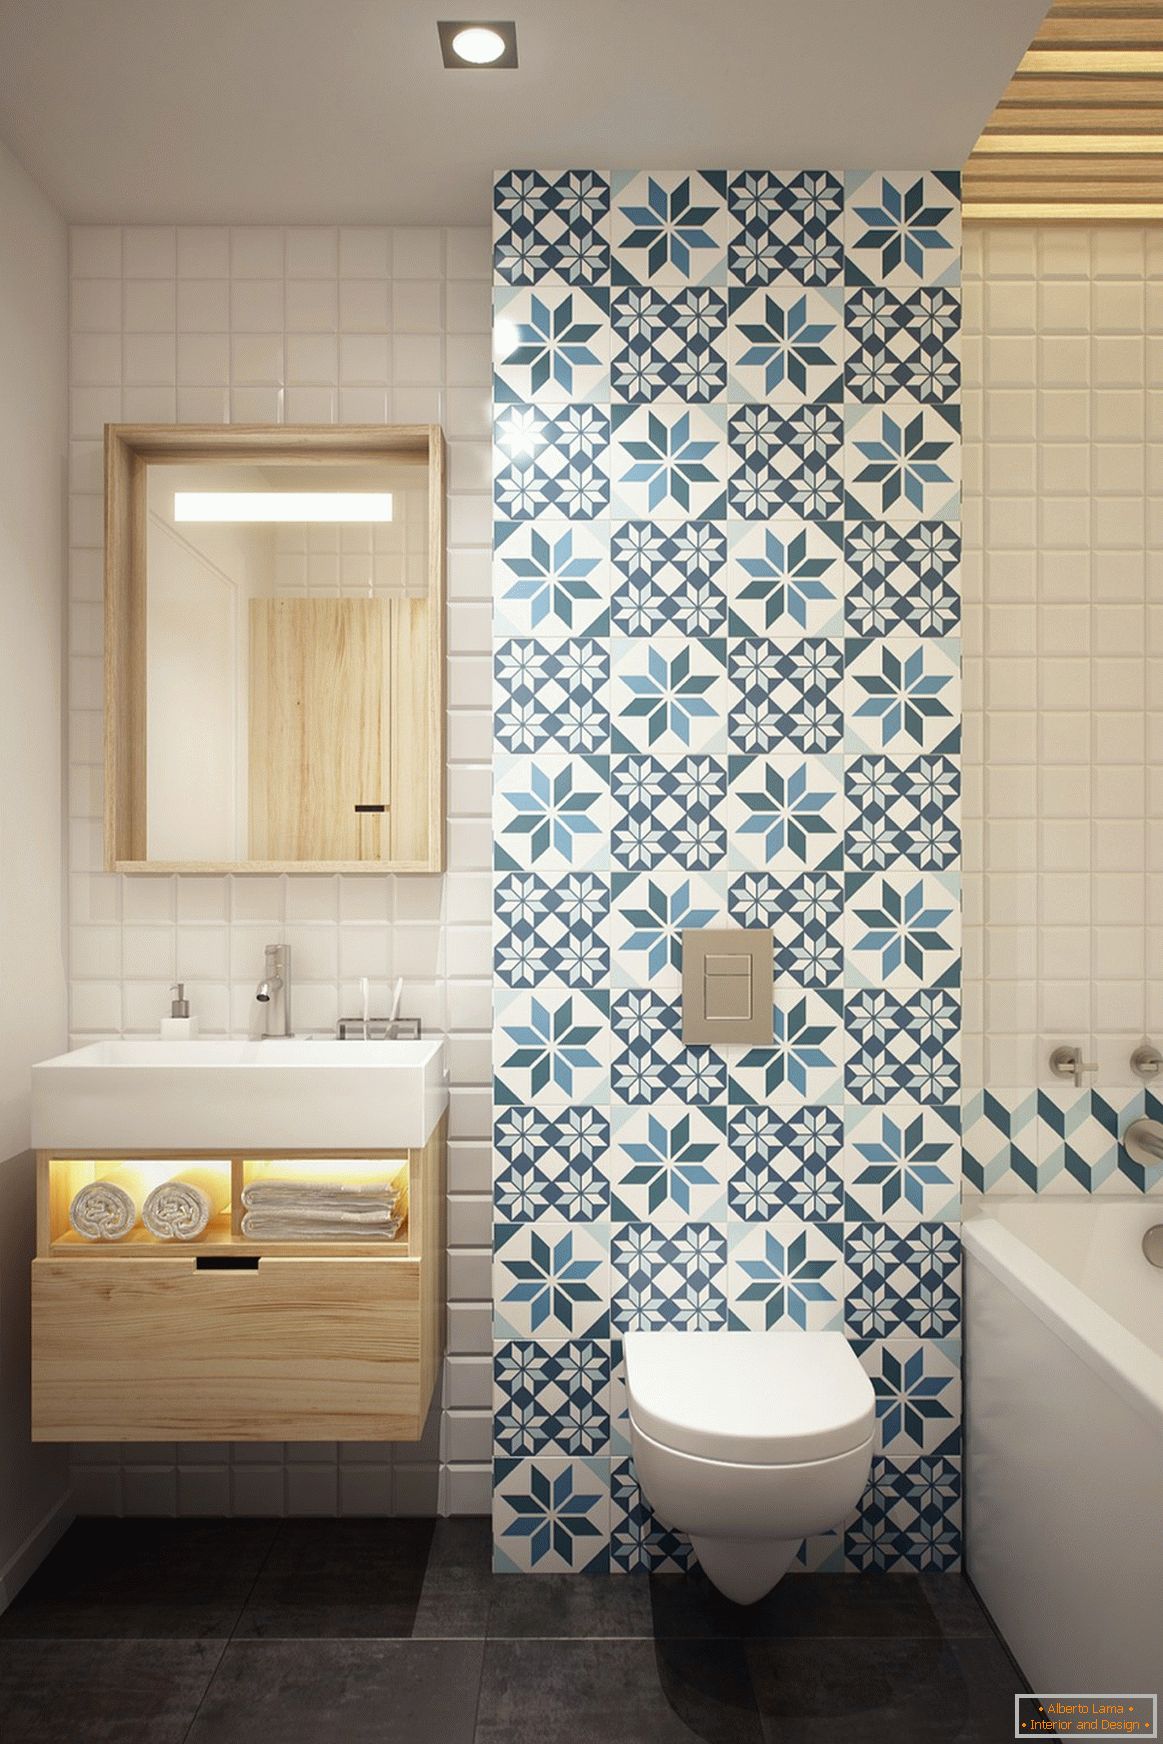 Bathroom design in Scandinavian style